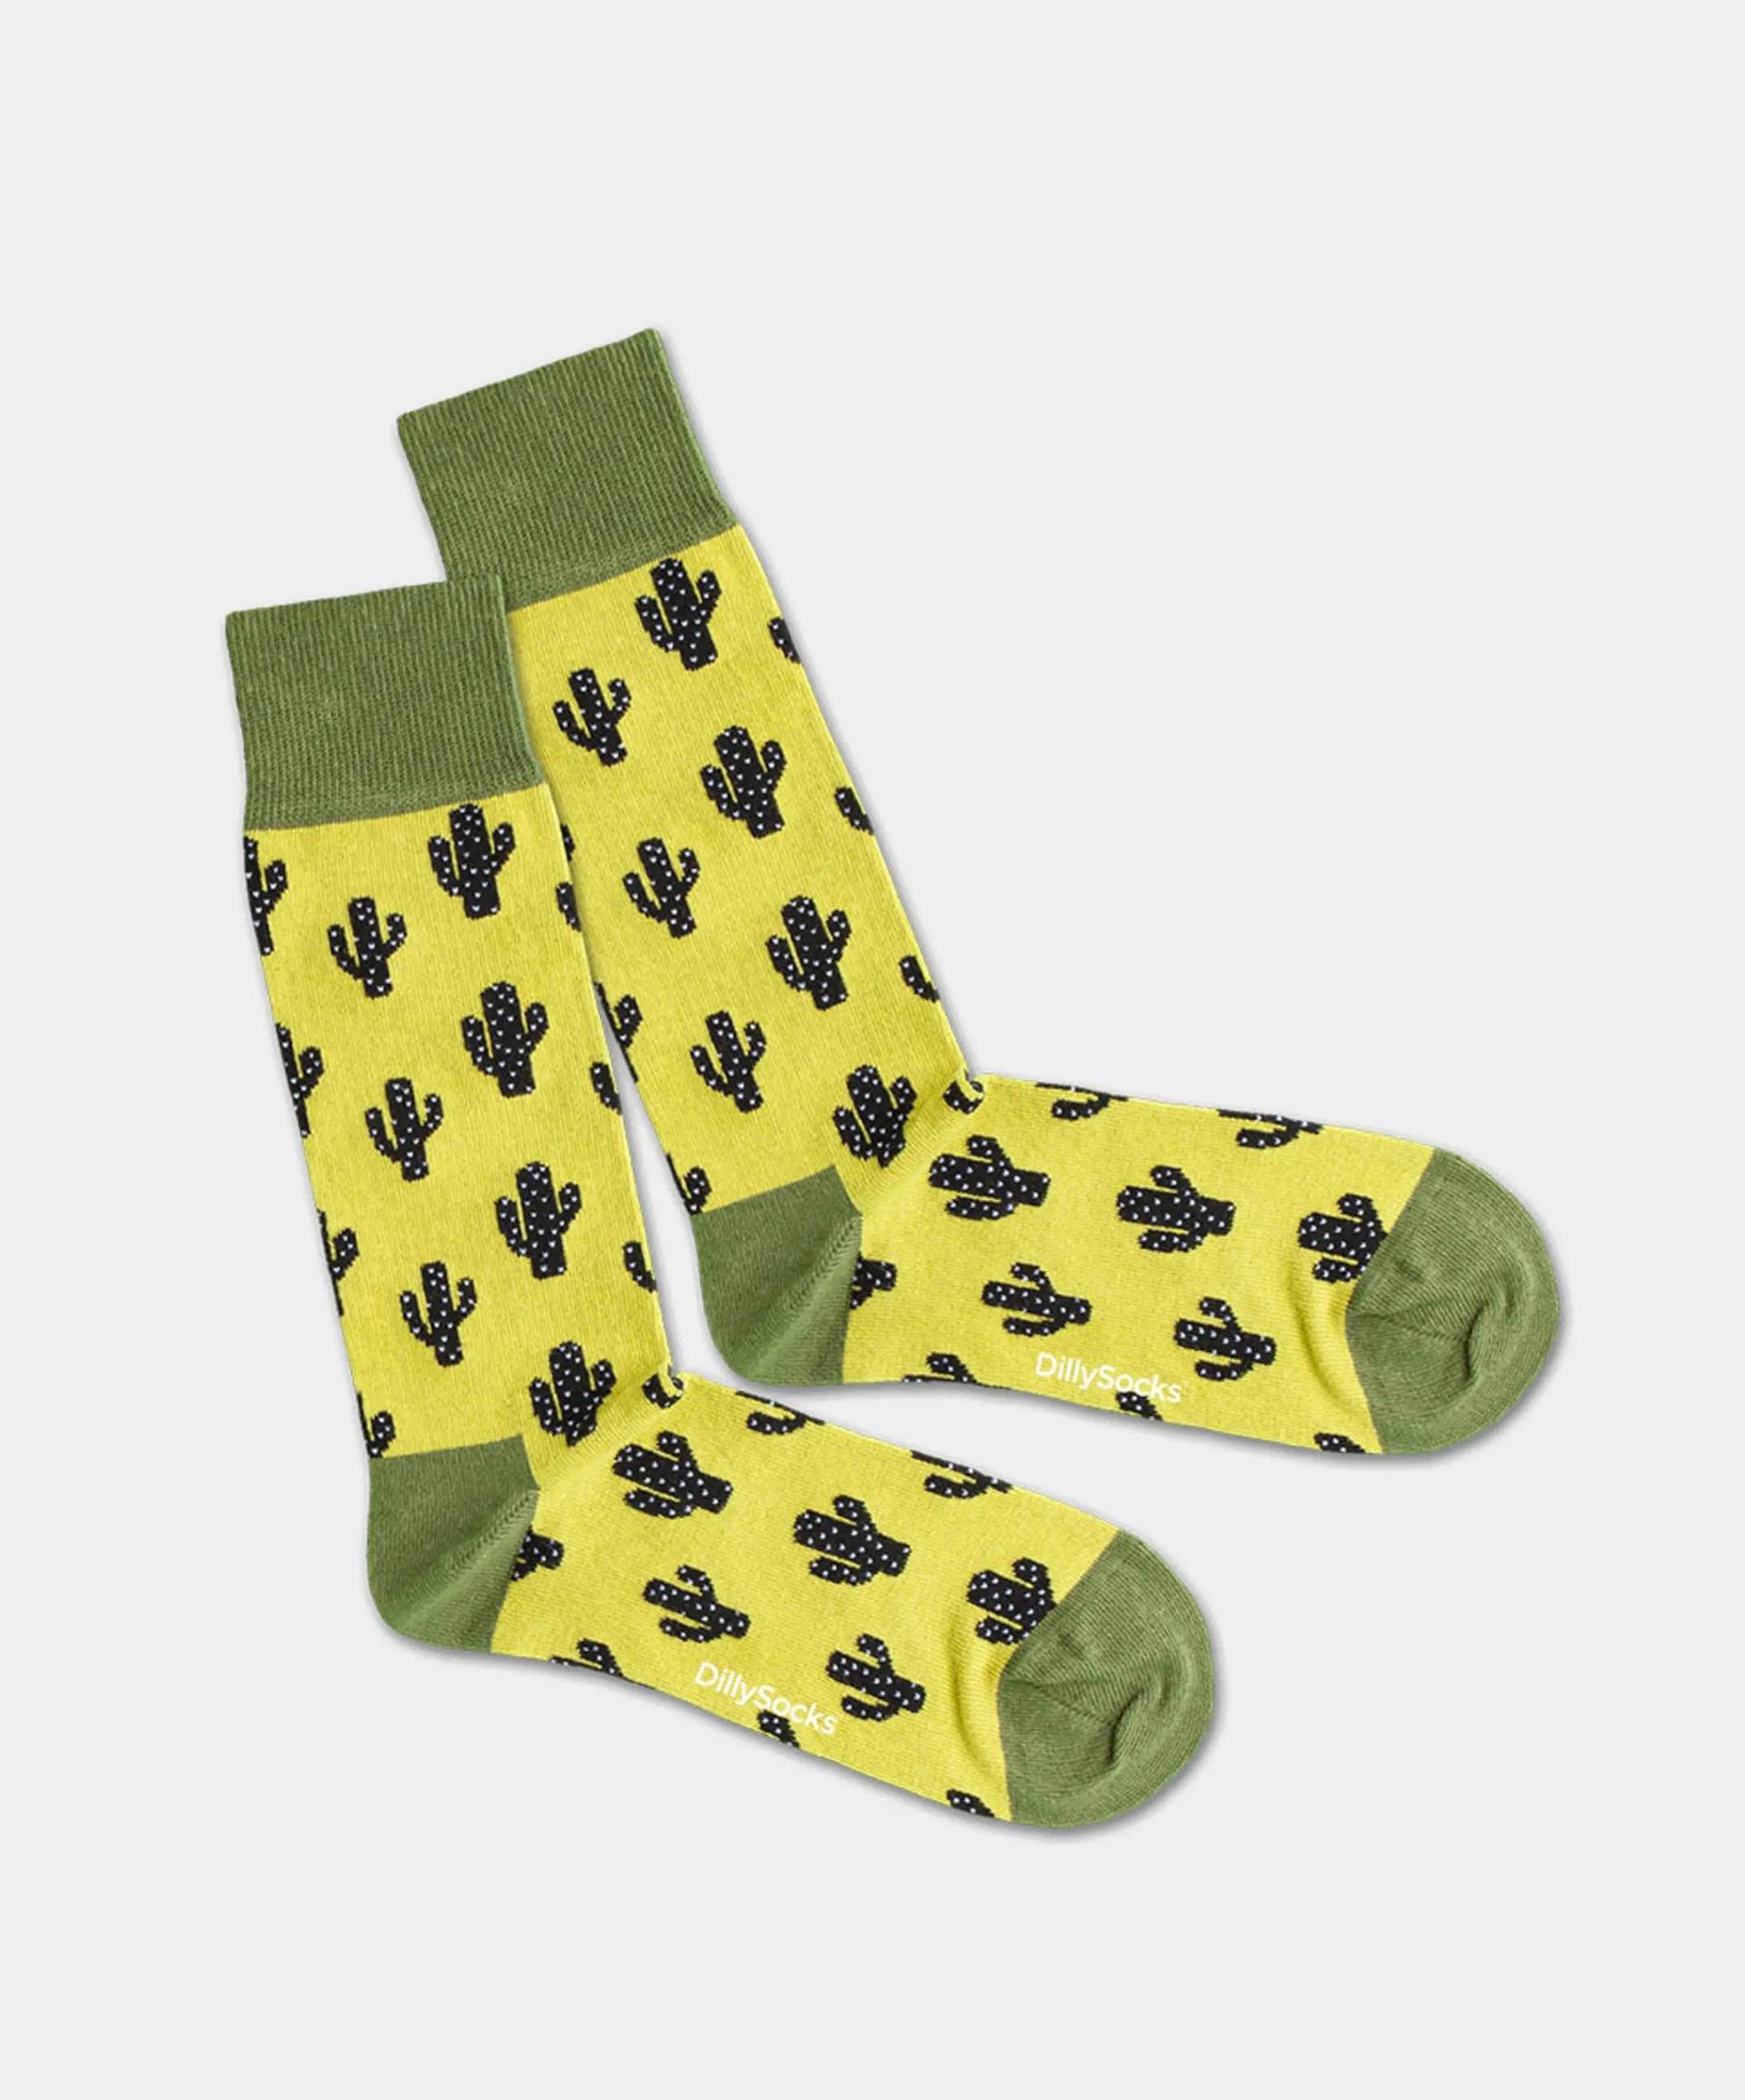 - Socken in Grün mit Pflanze Motiv/Muster von DillySocks